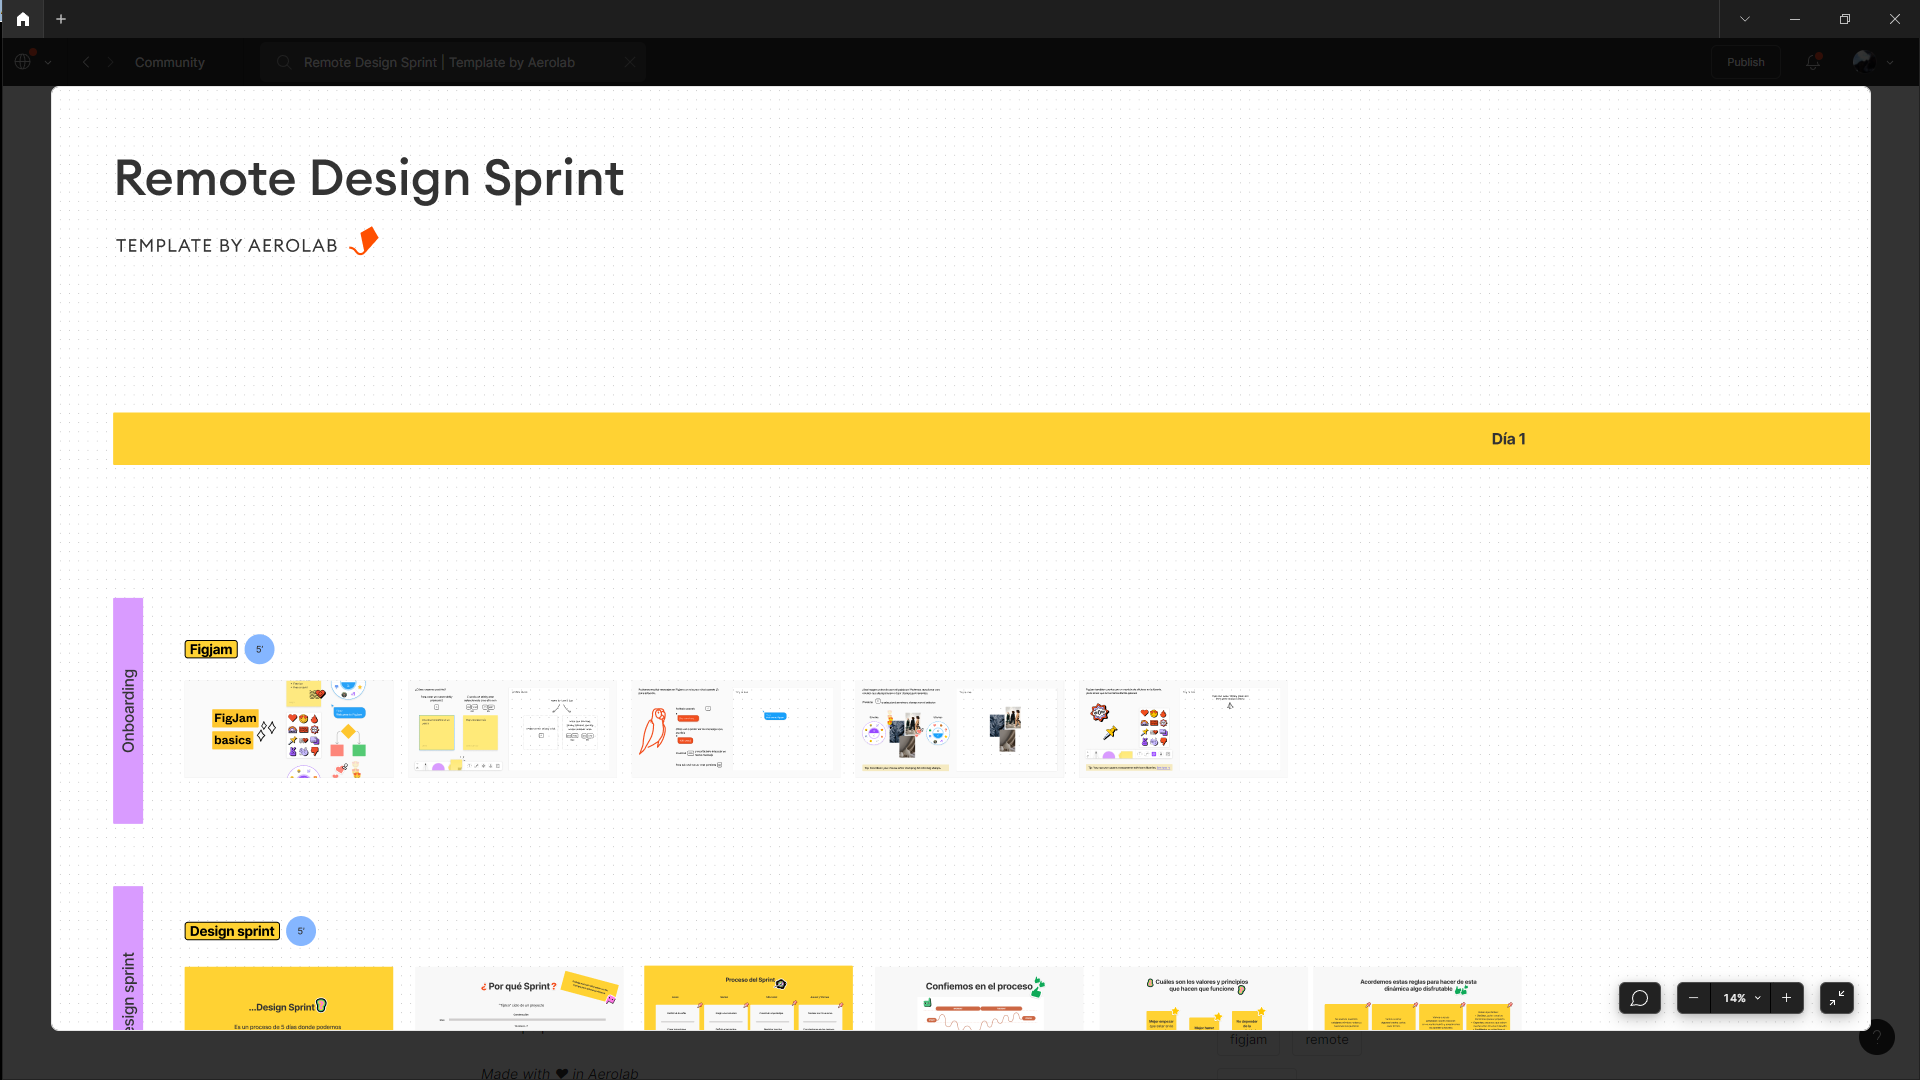 Imagem mostrando uma parte do Remote Design Sprint na página de Comunidades do Figma, com diversos modelos de design para o trabalho.